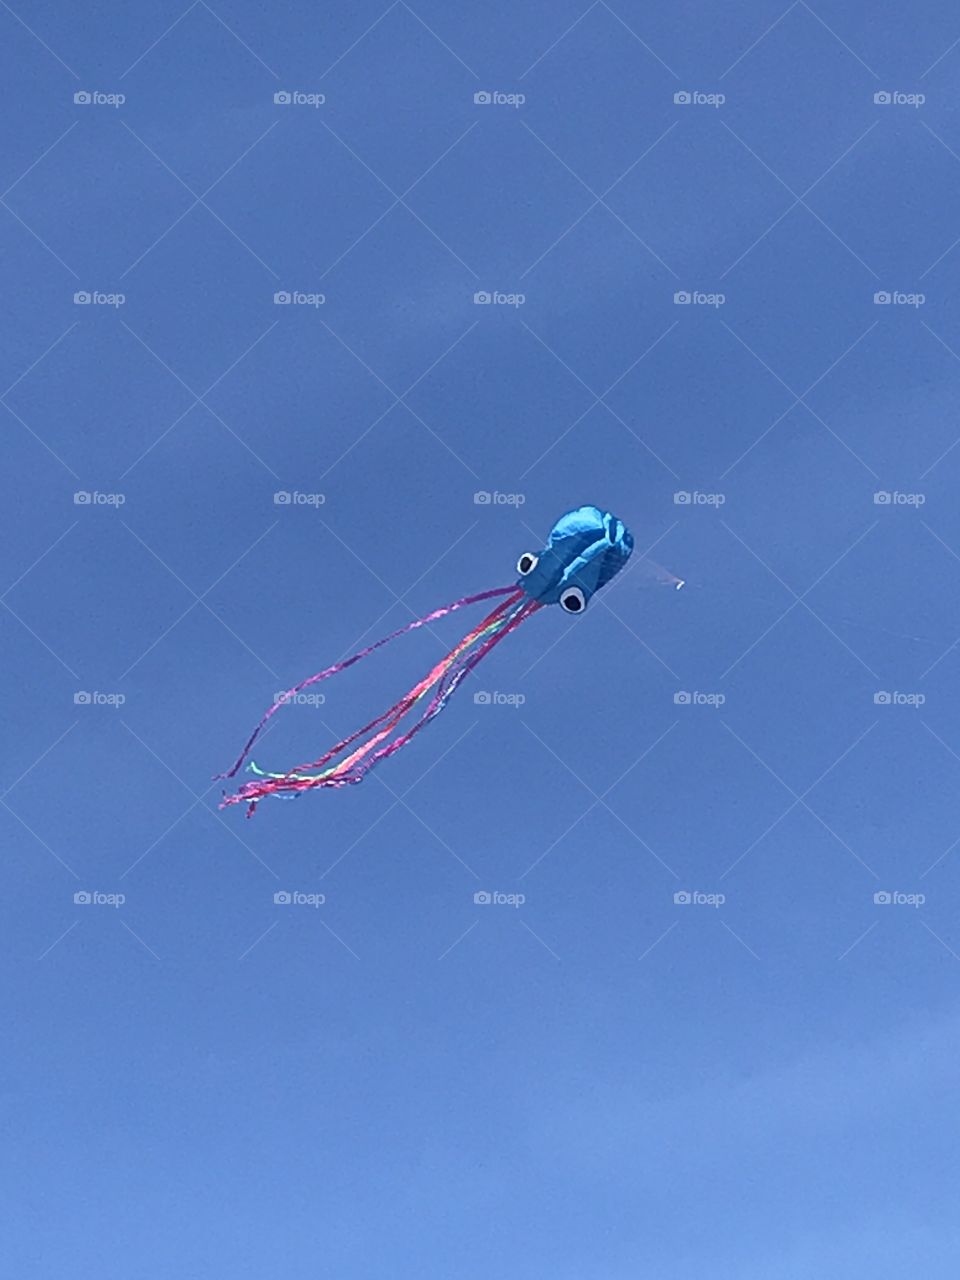 A squid kite on South Beach